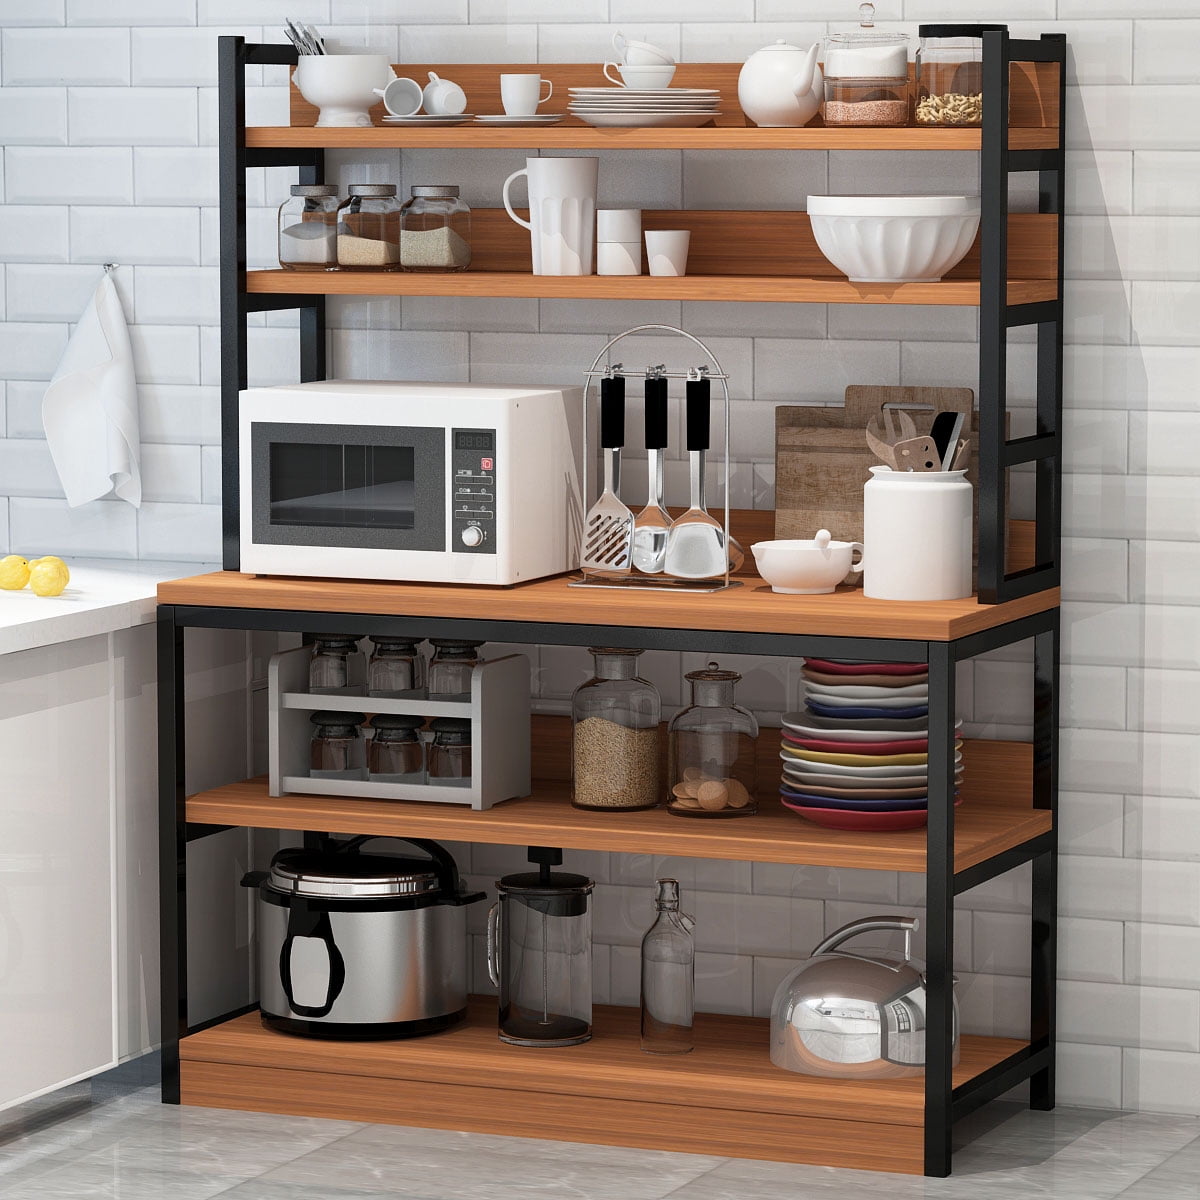 2 Tier Microwave Oven Shelf Rack Stand Storage Organizer Kitchen